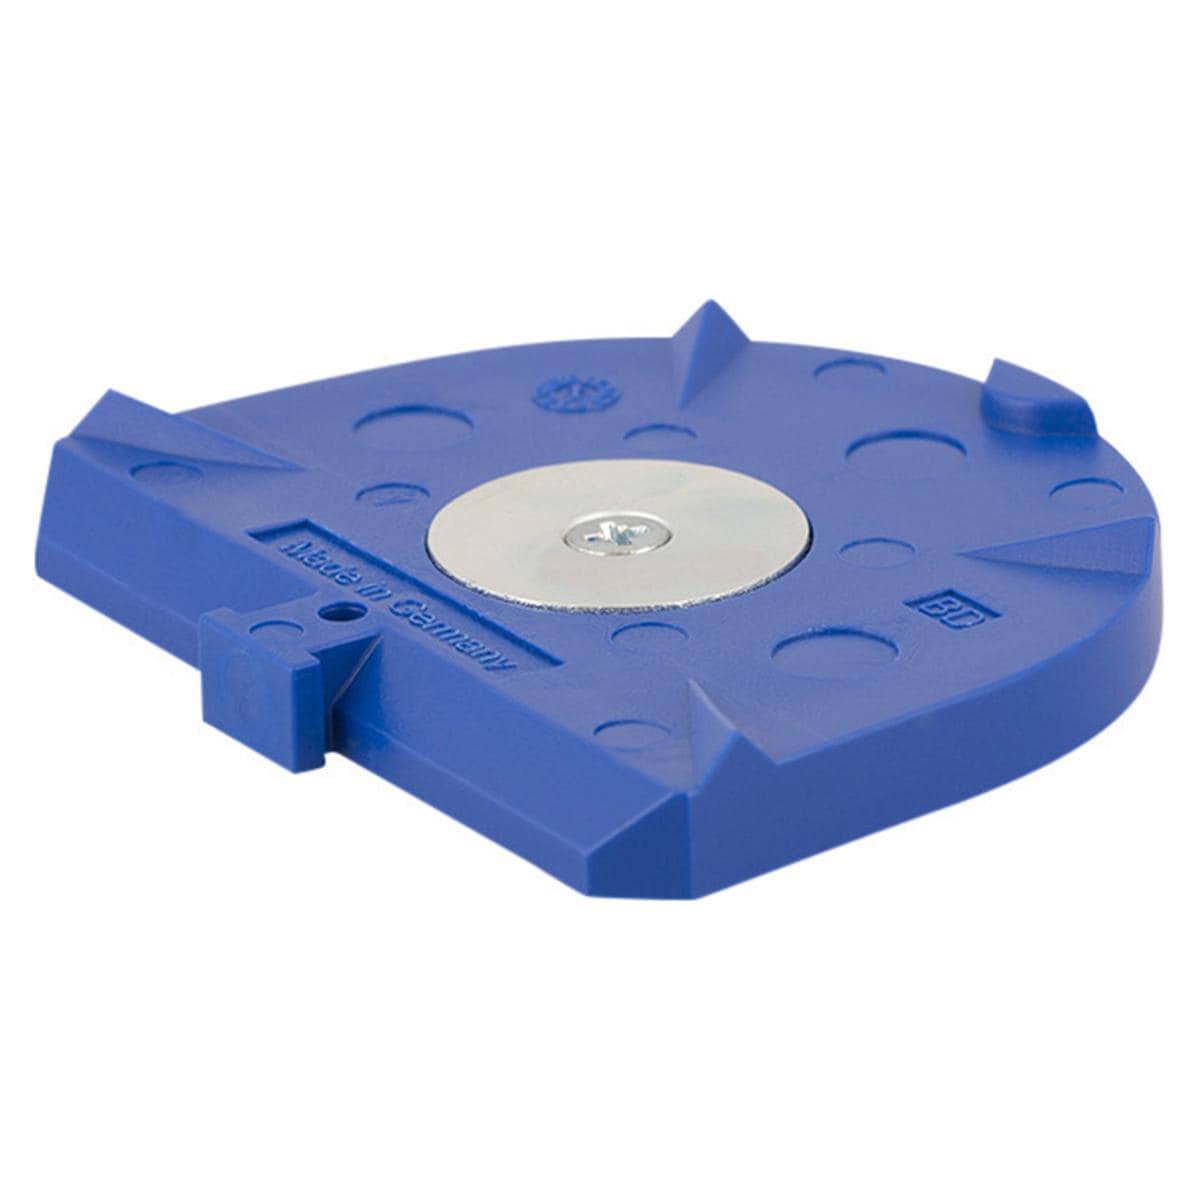 Combiflex PLUS Sockelplatten - Blau, klein, Packung 100 Stück